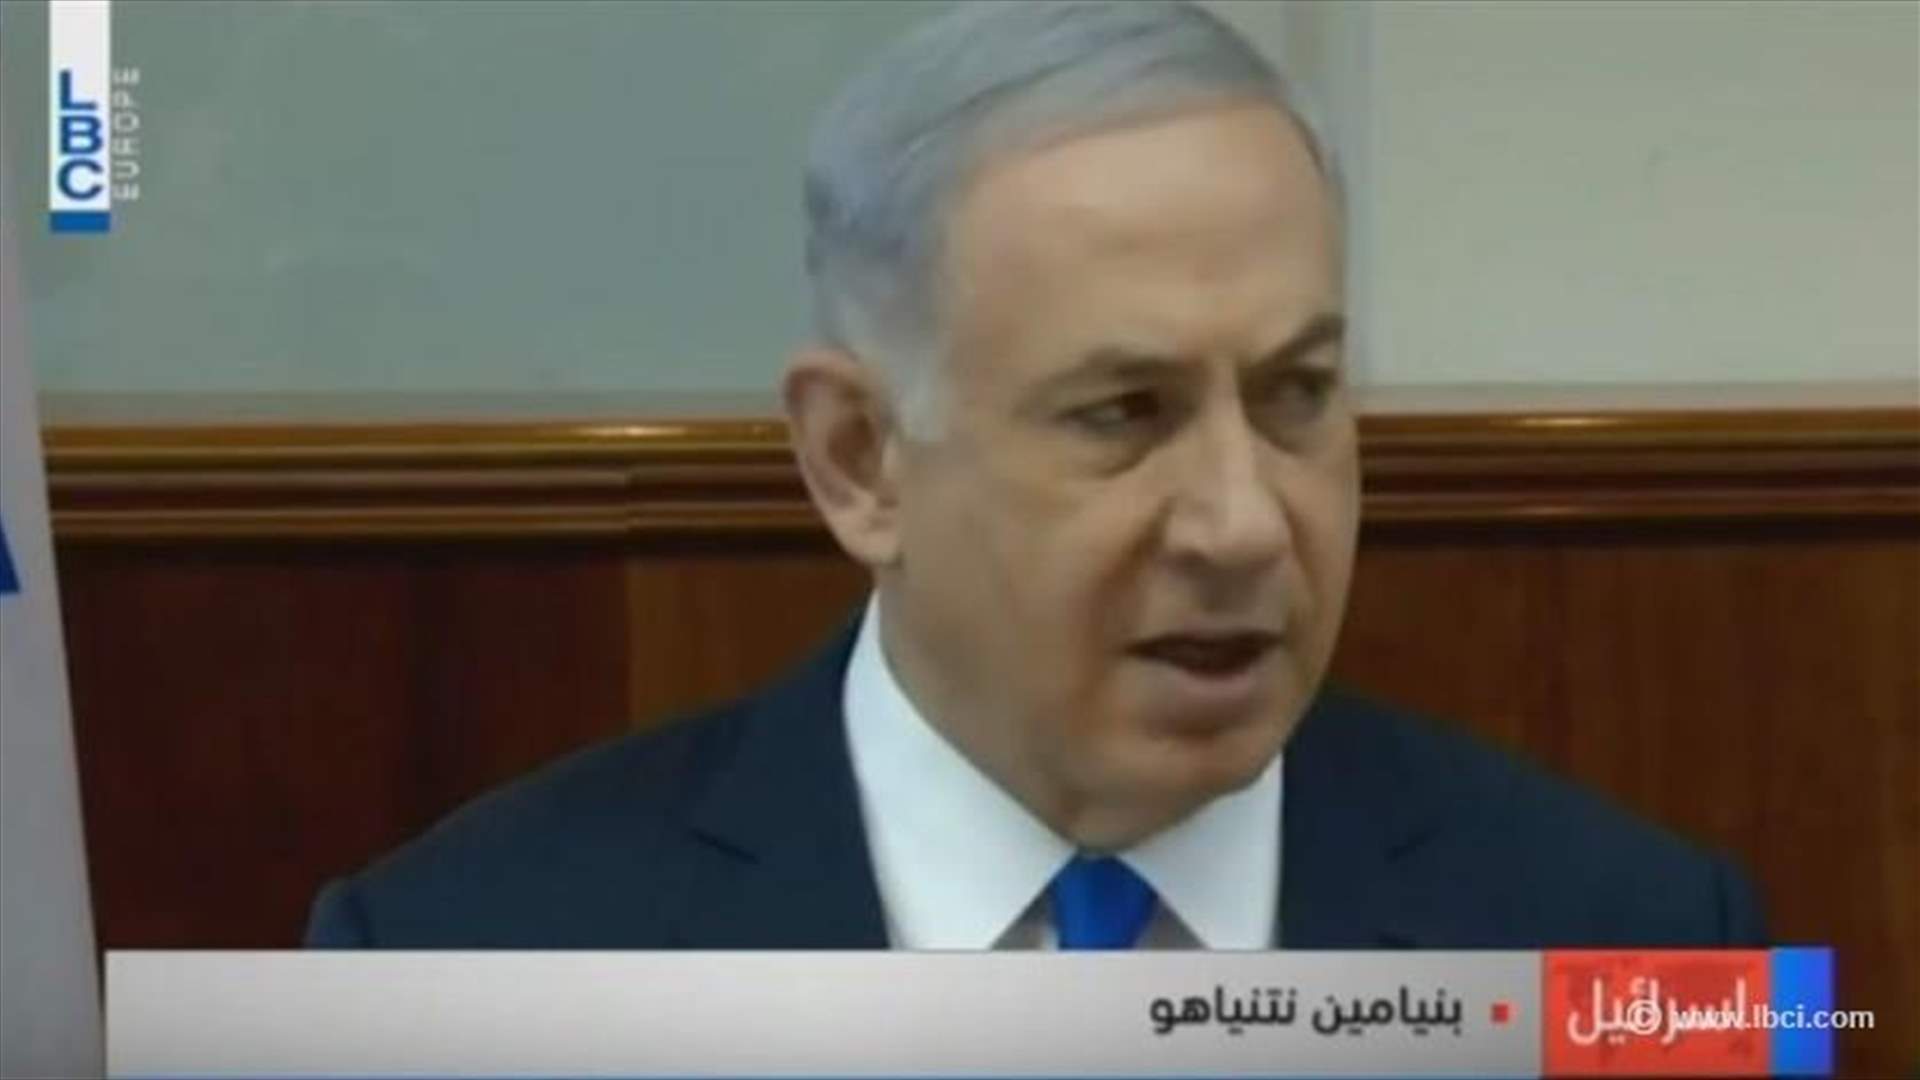 REPORT: Netanyahu incites exile of Arab Knesset members